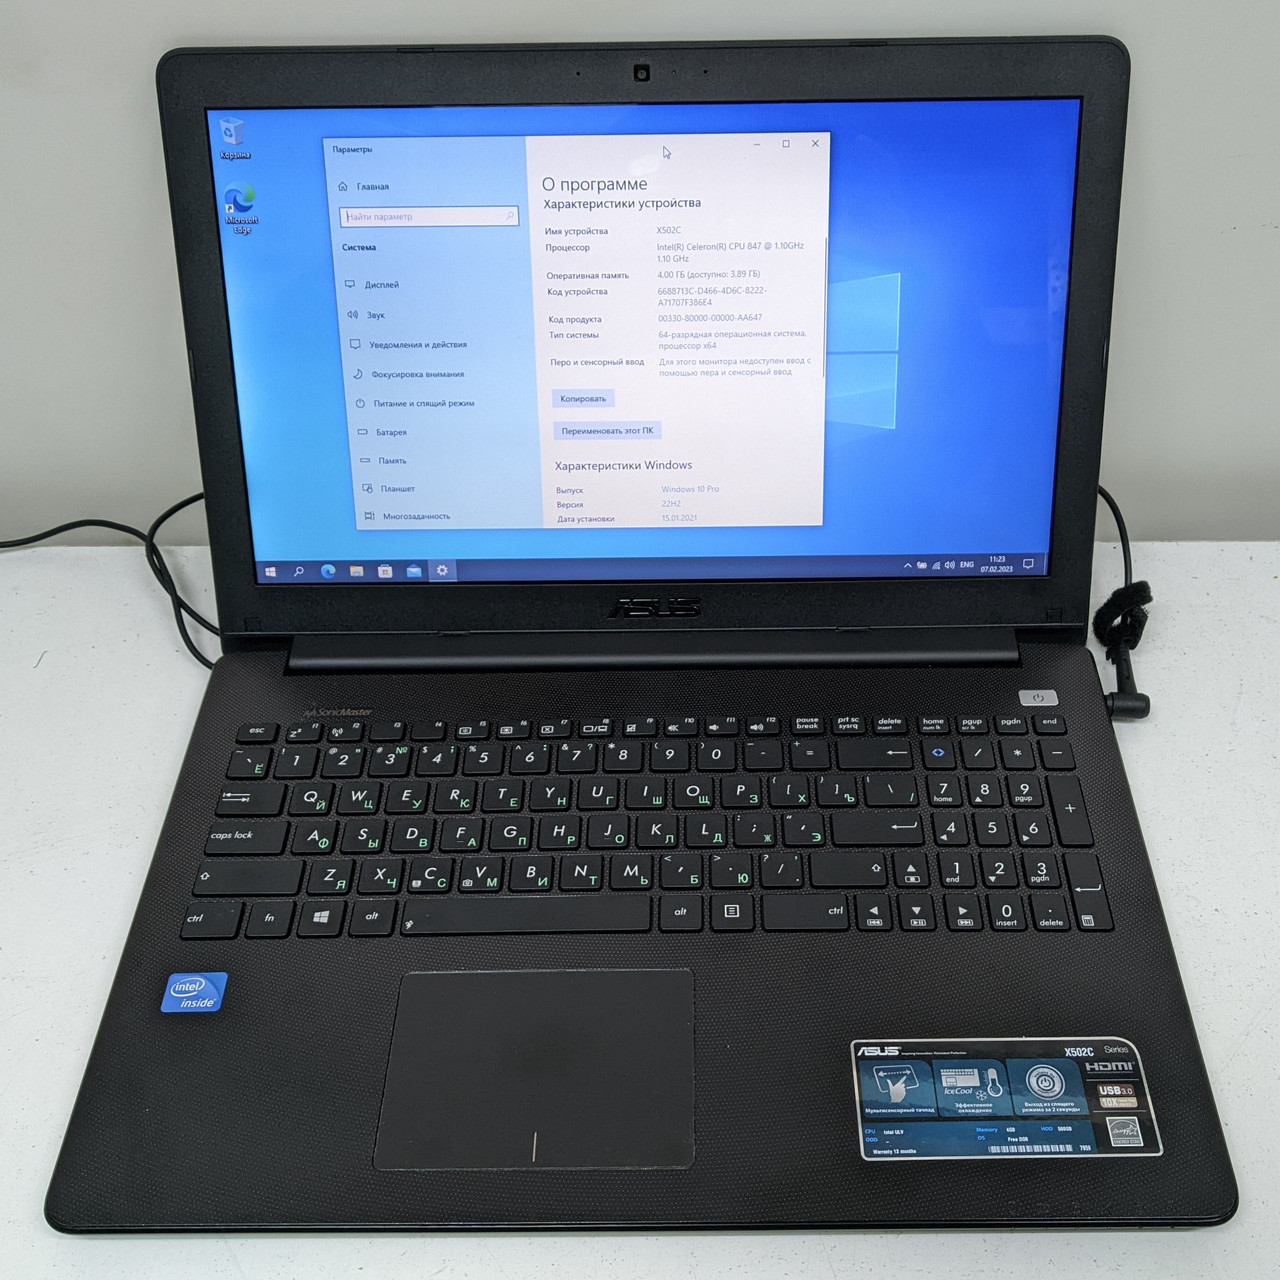 Ноутбук офісний 15" Asus X502C батарея 2,5 години, легкий 2 кг